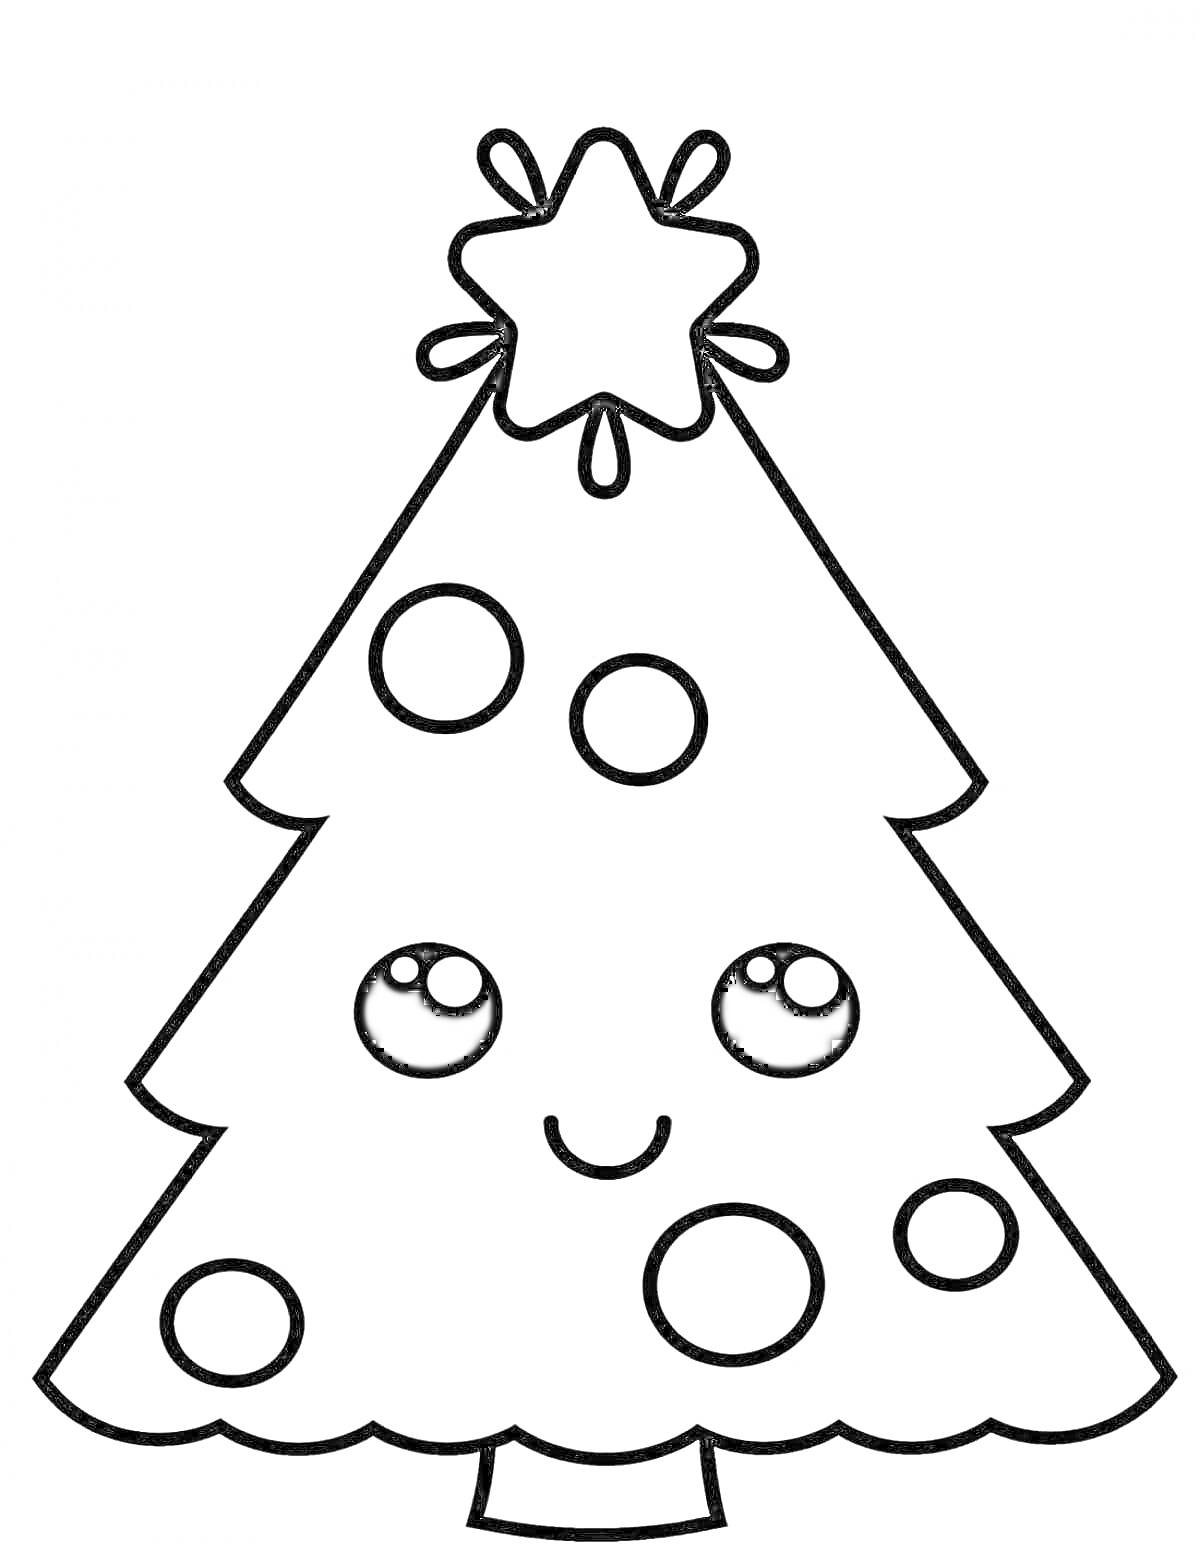 Раскраска новогодняя елка с улыбкой, с звездой на вершине и круглыми игрушками